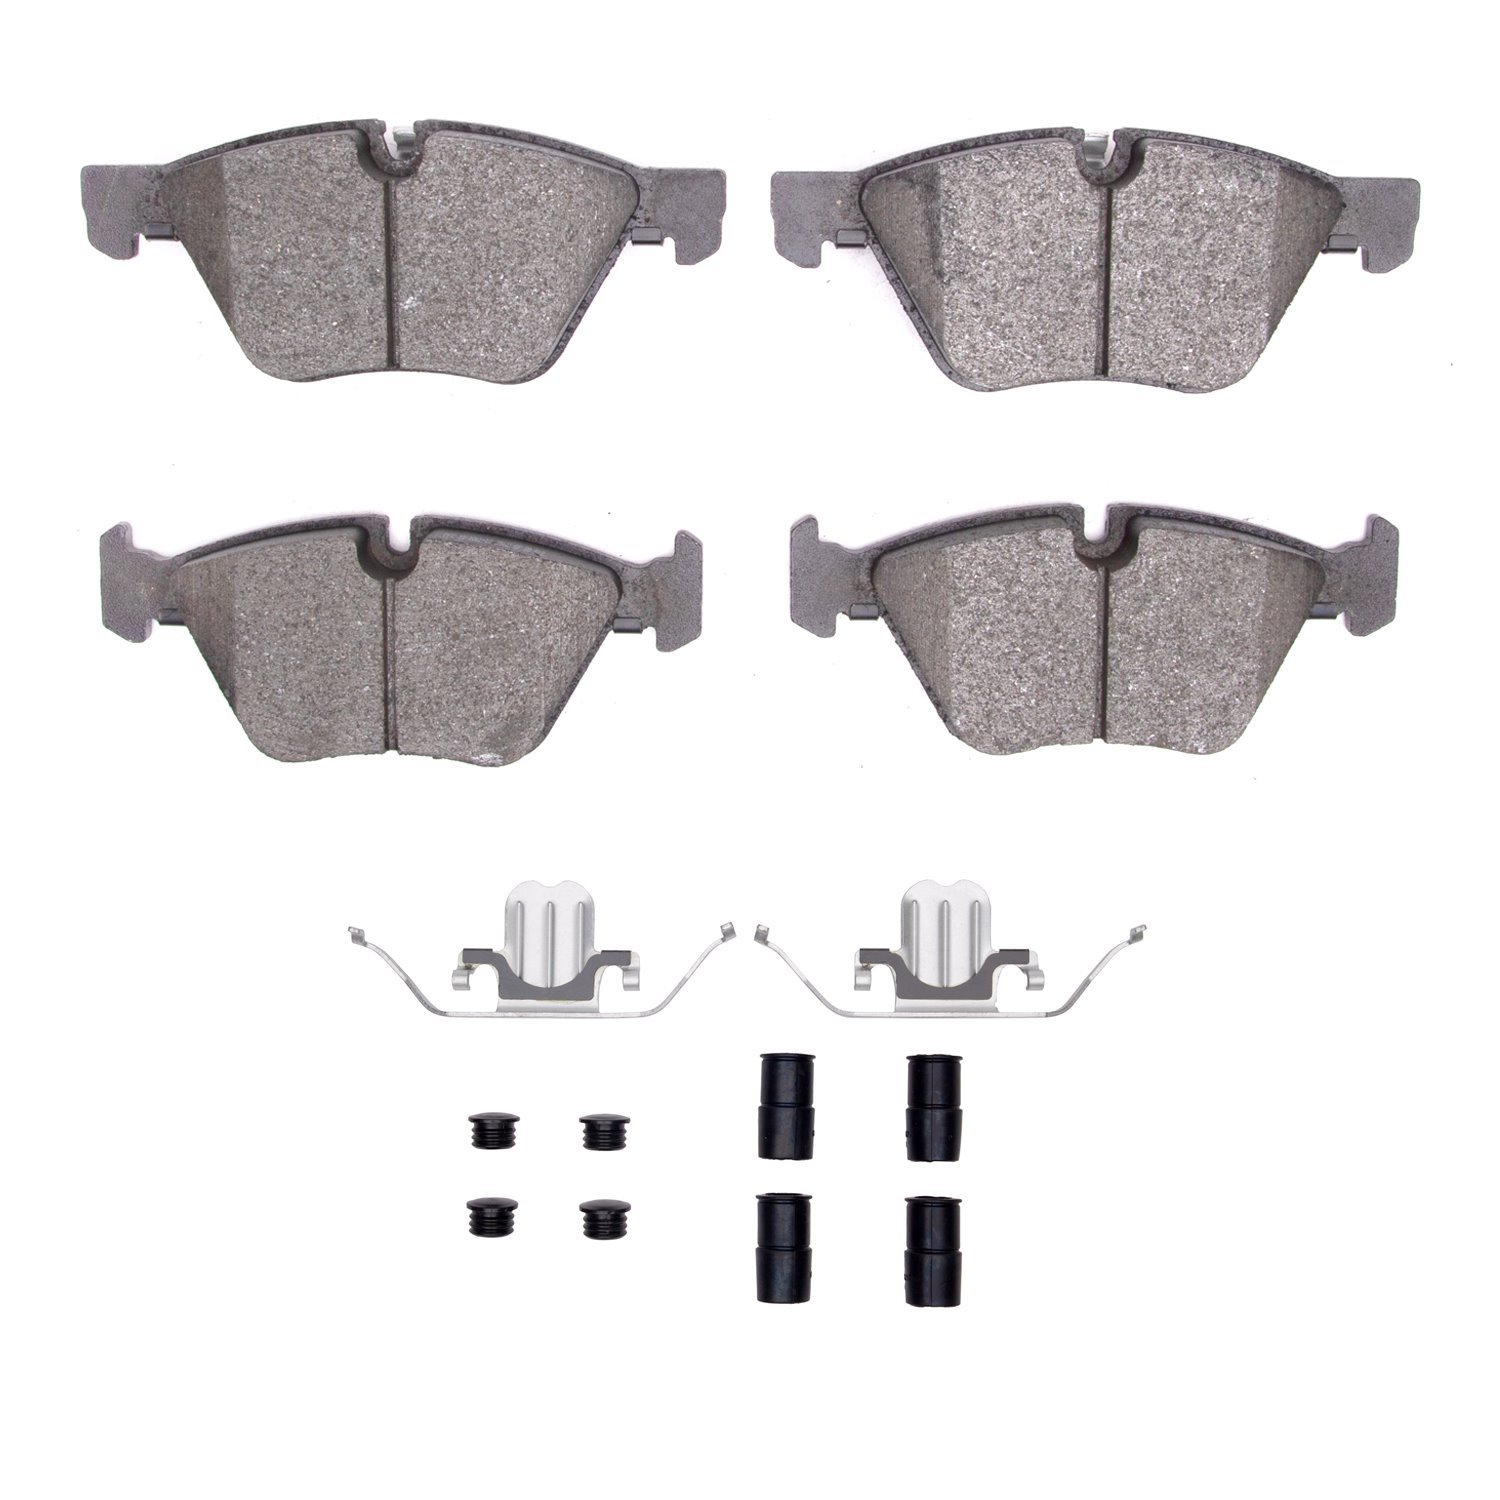 1600-1061-11 5000 Euro Ceramic Brake Pads & Hardware Kit, 2007-2013 BMW, Position: Front